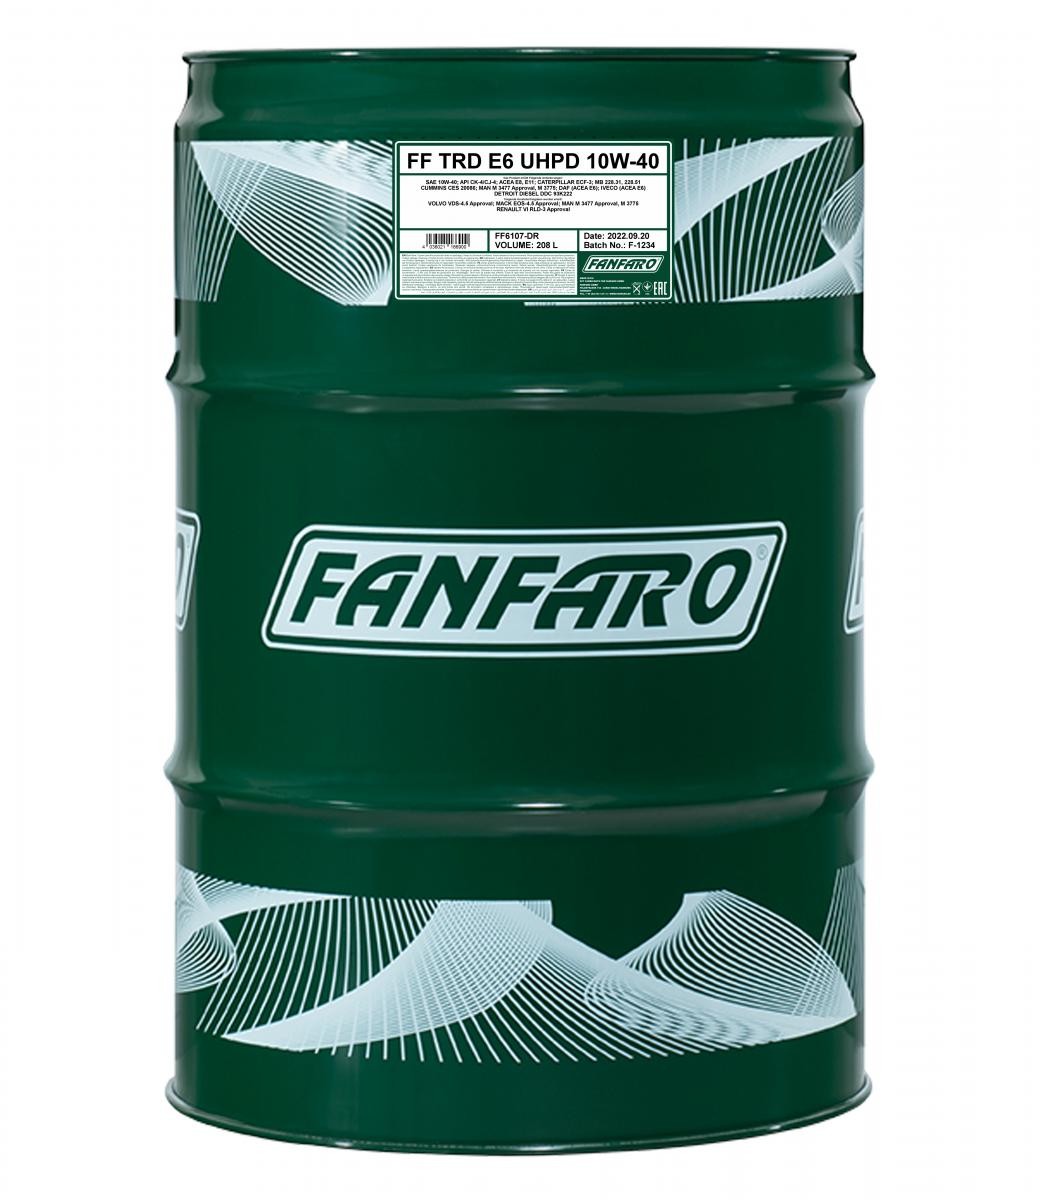 FF6107-DR FANFARO UHPD, TRD E6 Blue 10W-40, 208l, Synthetiköl Motoröl FF6107-DR günstig kaufen